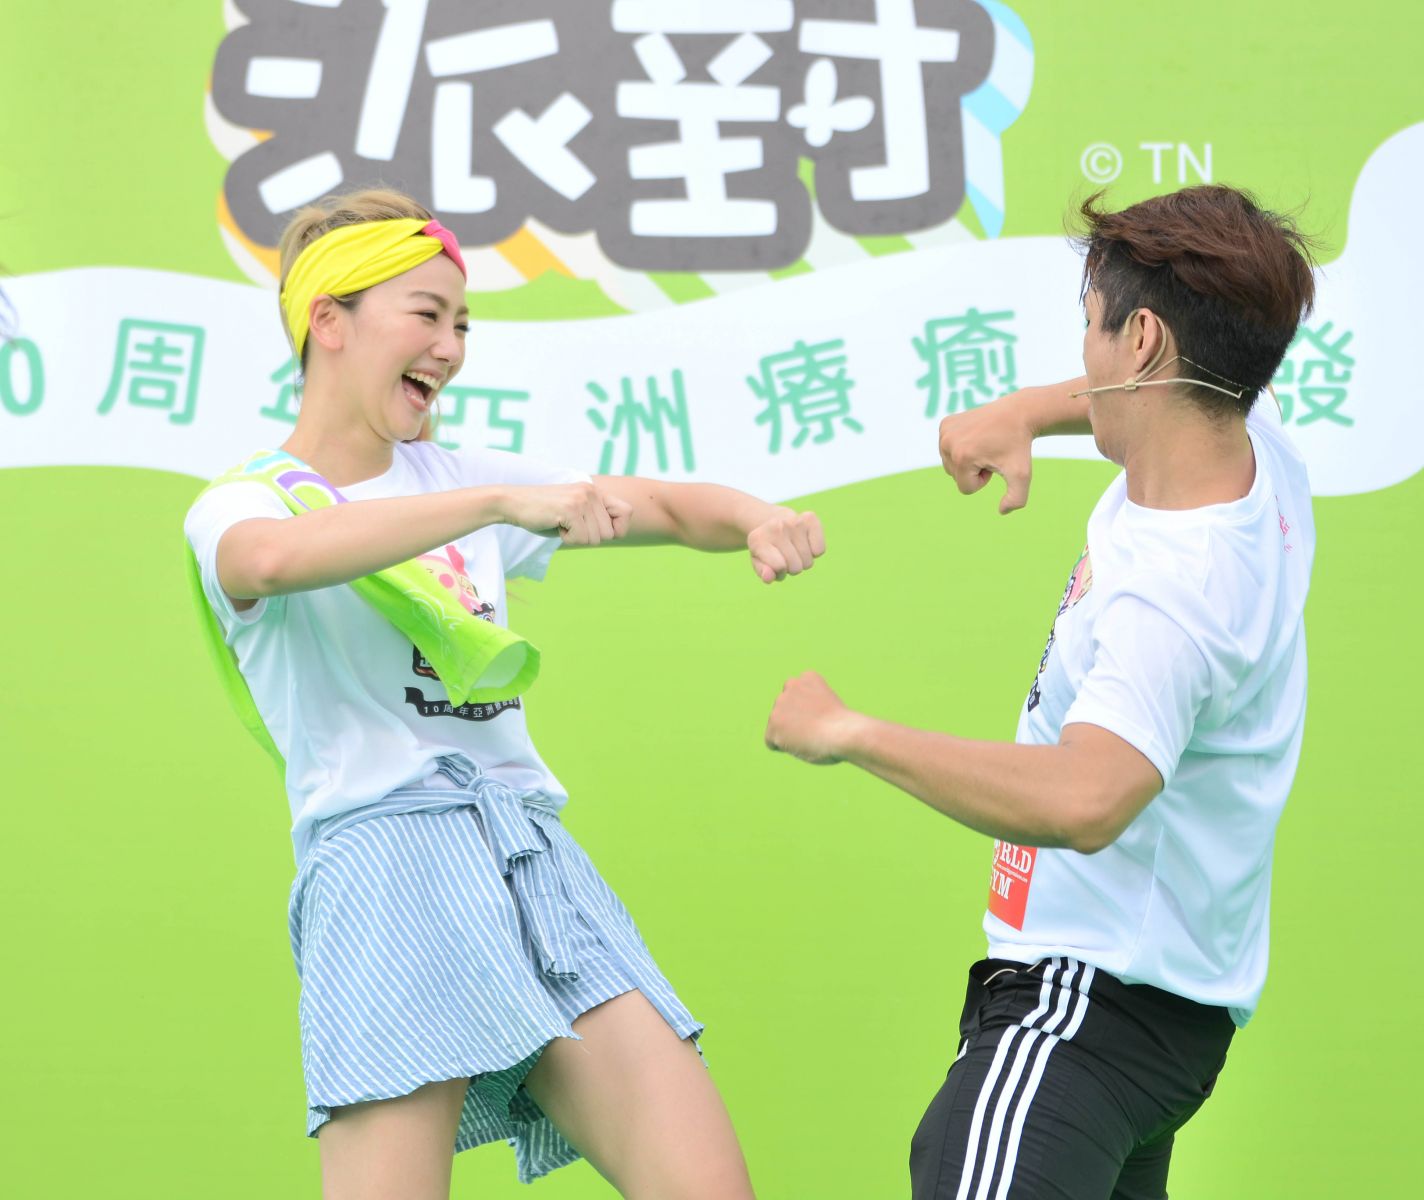 醜比頭路跑代言人邵庭(左)與舞蹈老師帶領跑者賽前跳熱身操